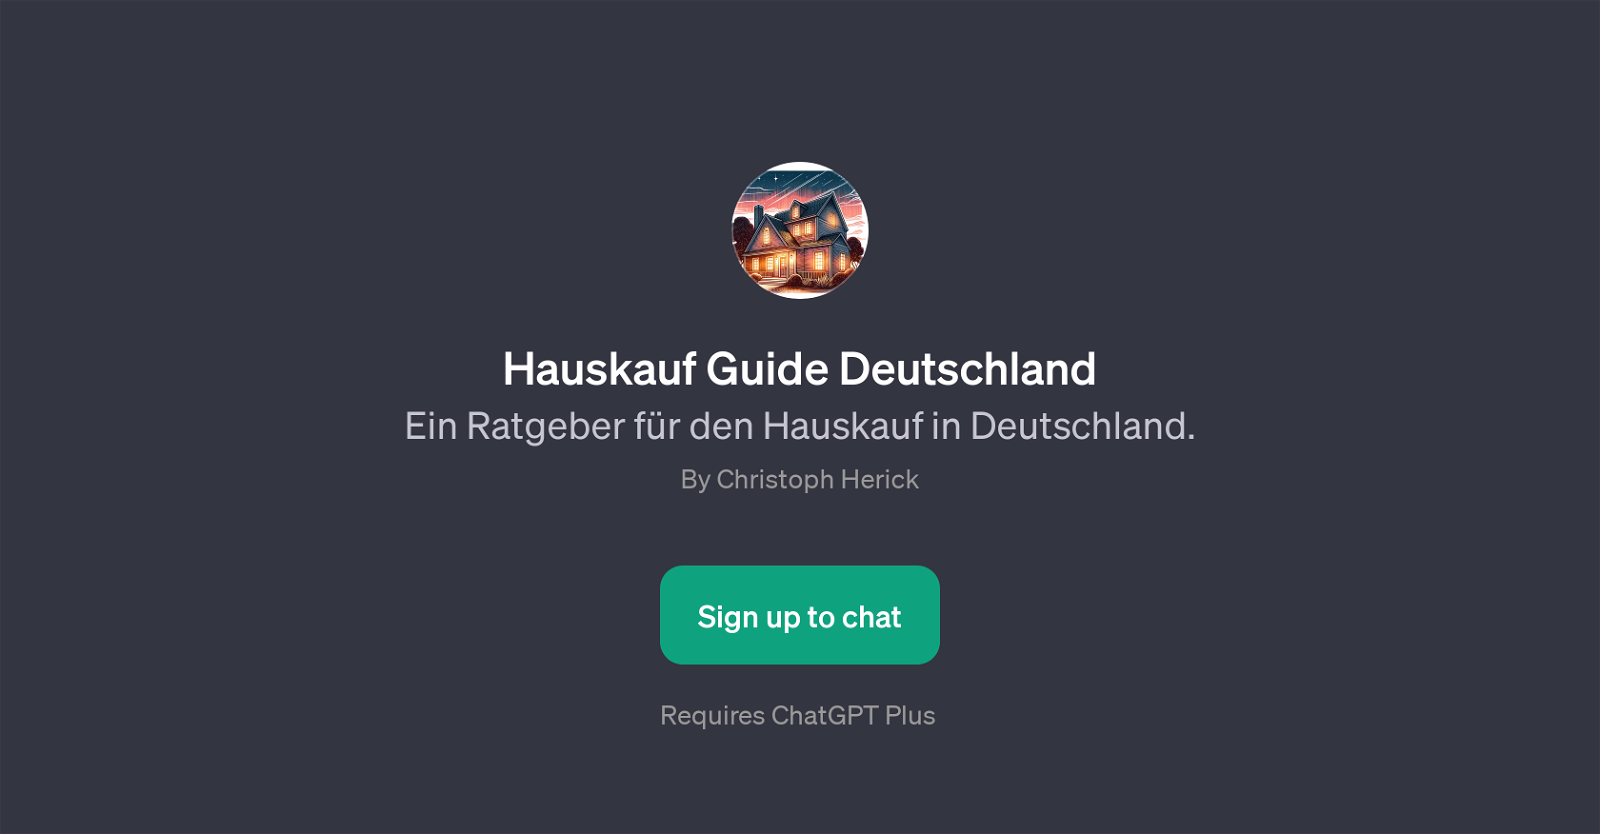 Hauskauf Guide Deutschland website